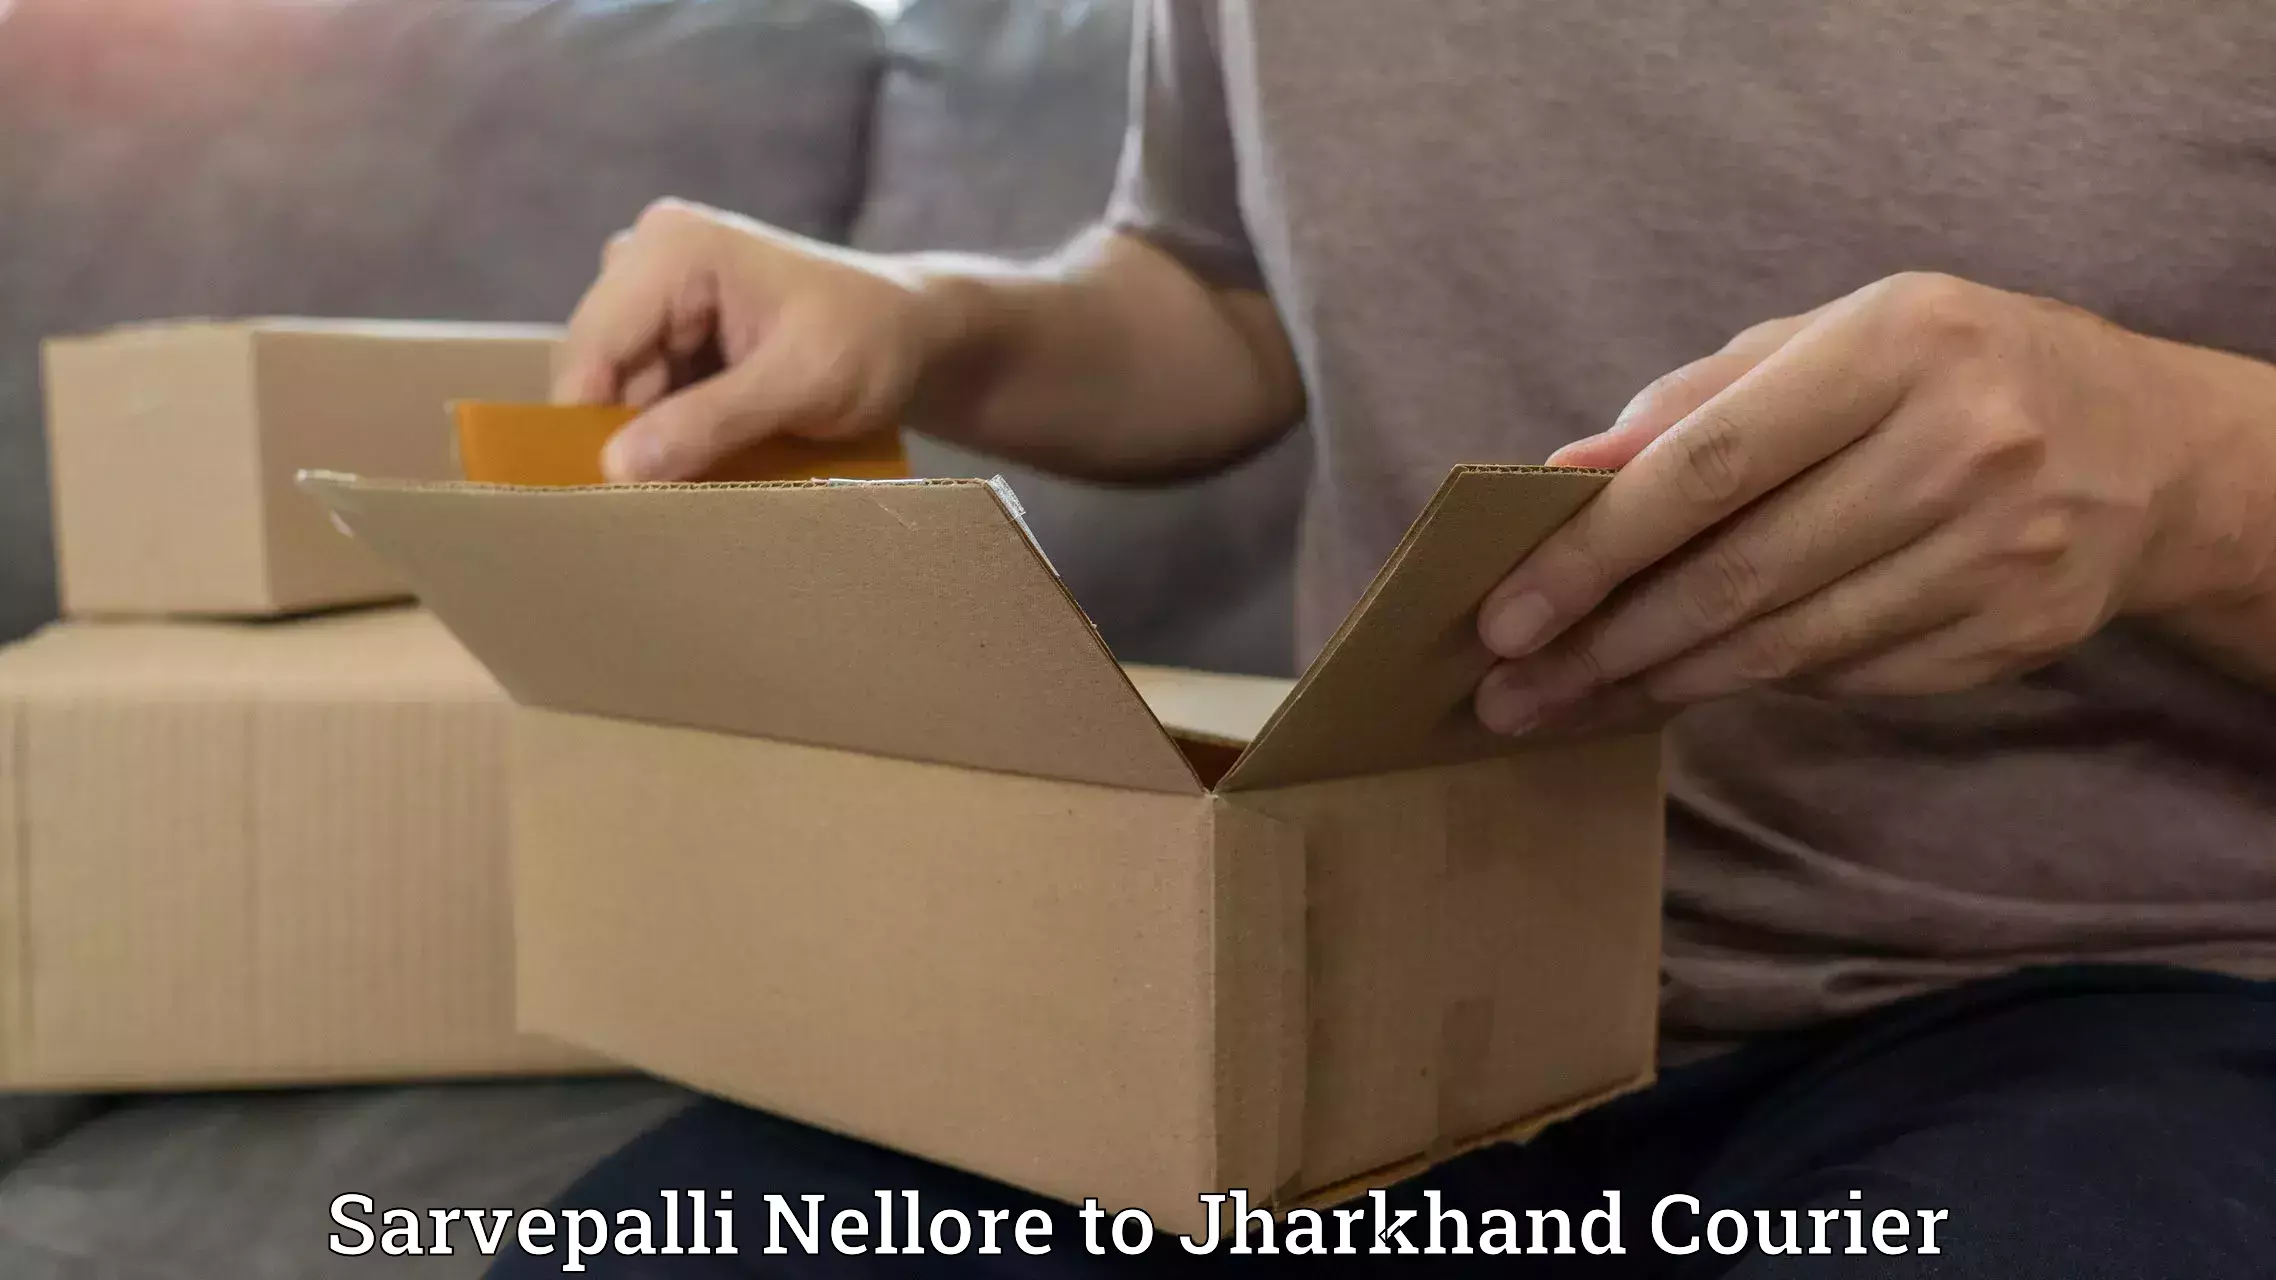 Nationwide parcel services Sarvepalli Nellore to Godda